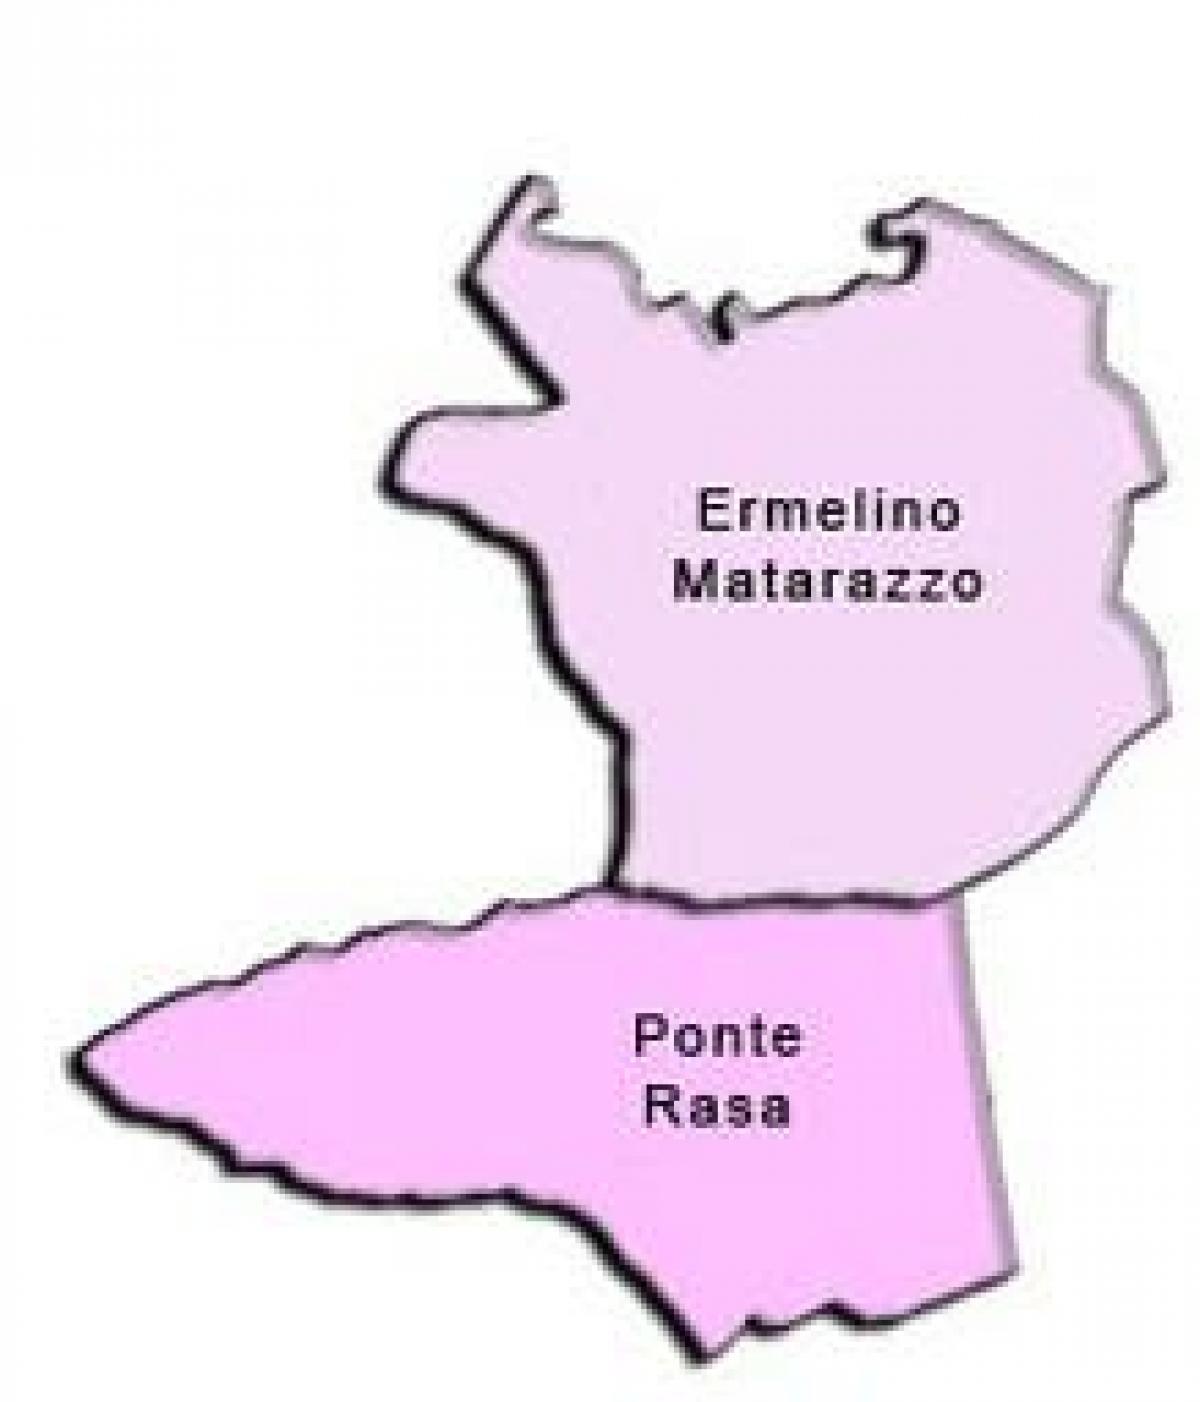 Карта Ermelino Матараццо супрефектур